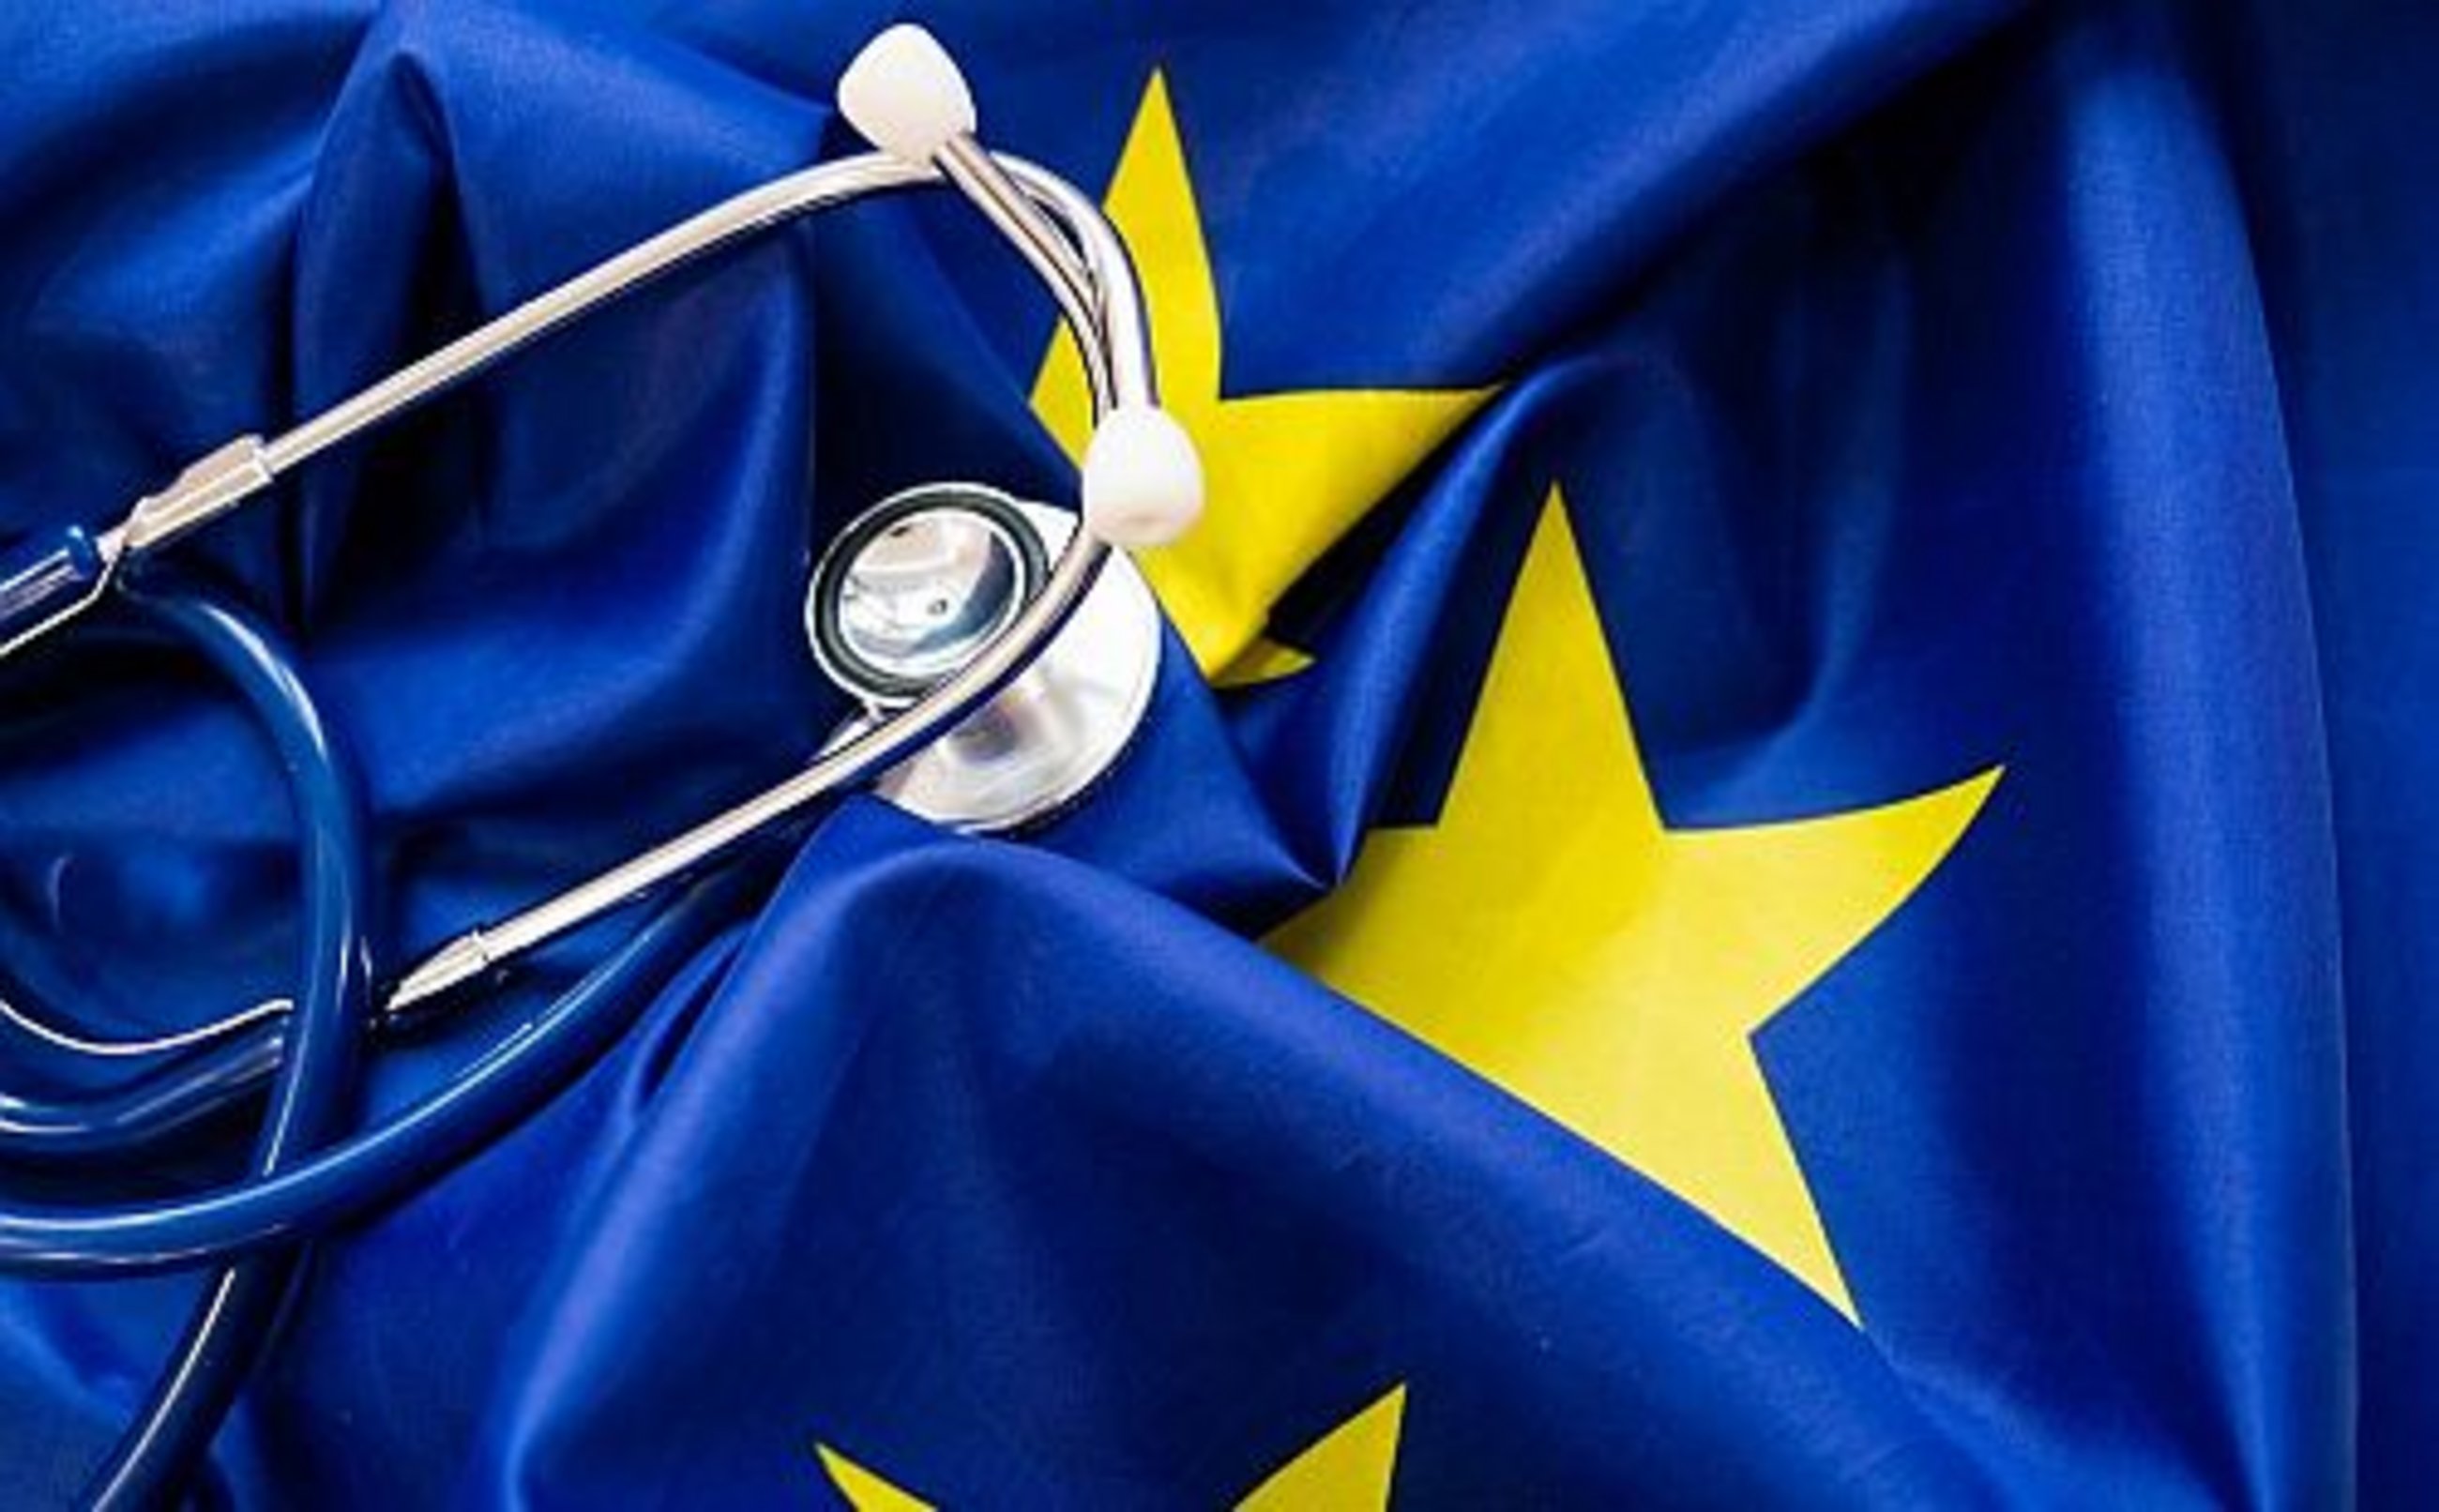 Tre proposte per un'Unione europea della salute